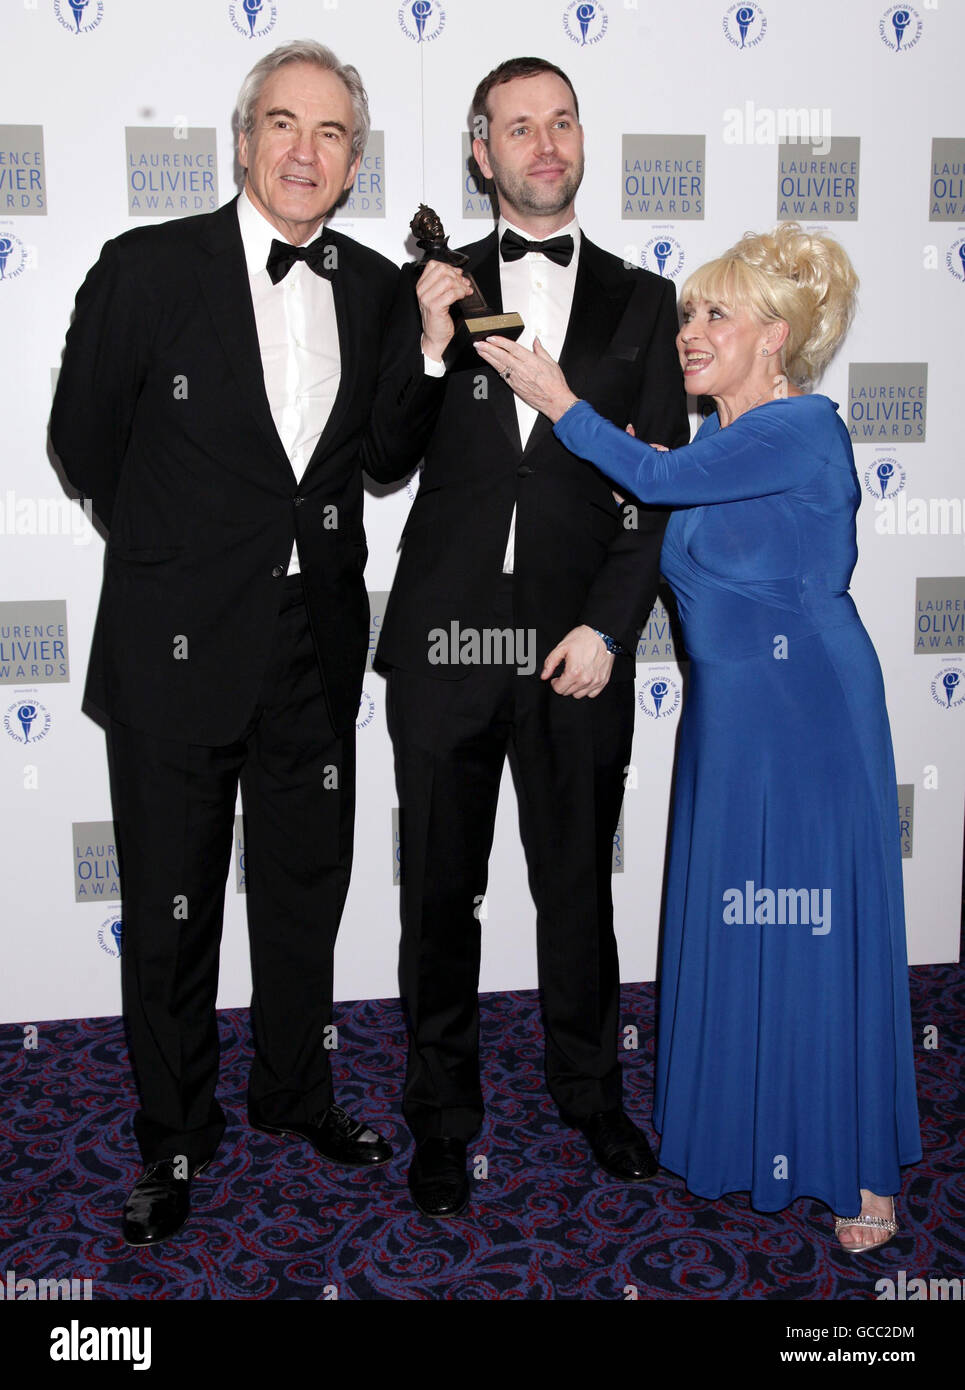 Laurence Olivier Awards - Londres Banque D'Images